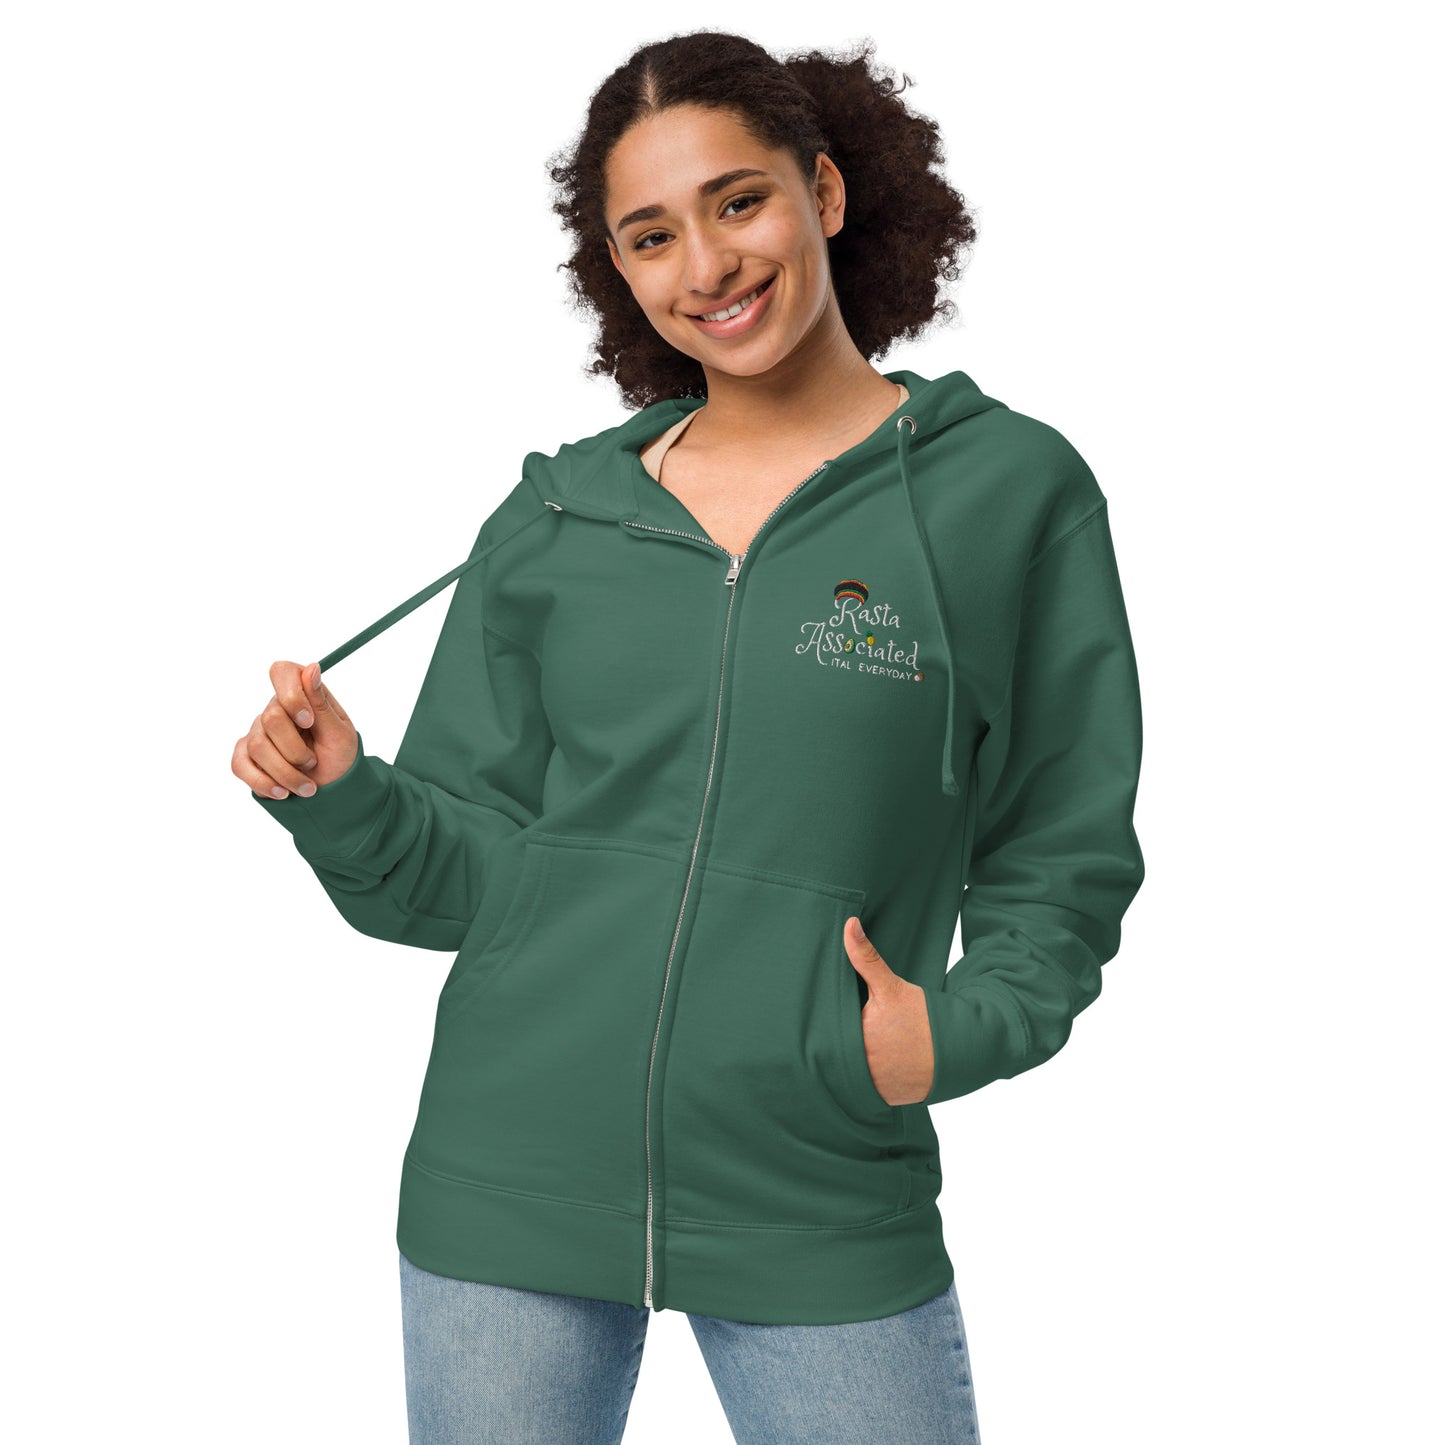 Rasta - Unisex fleece zip up hoodie